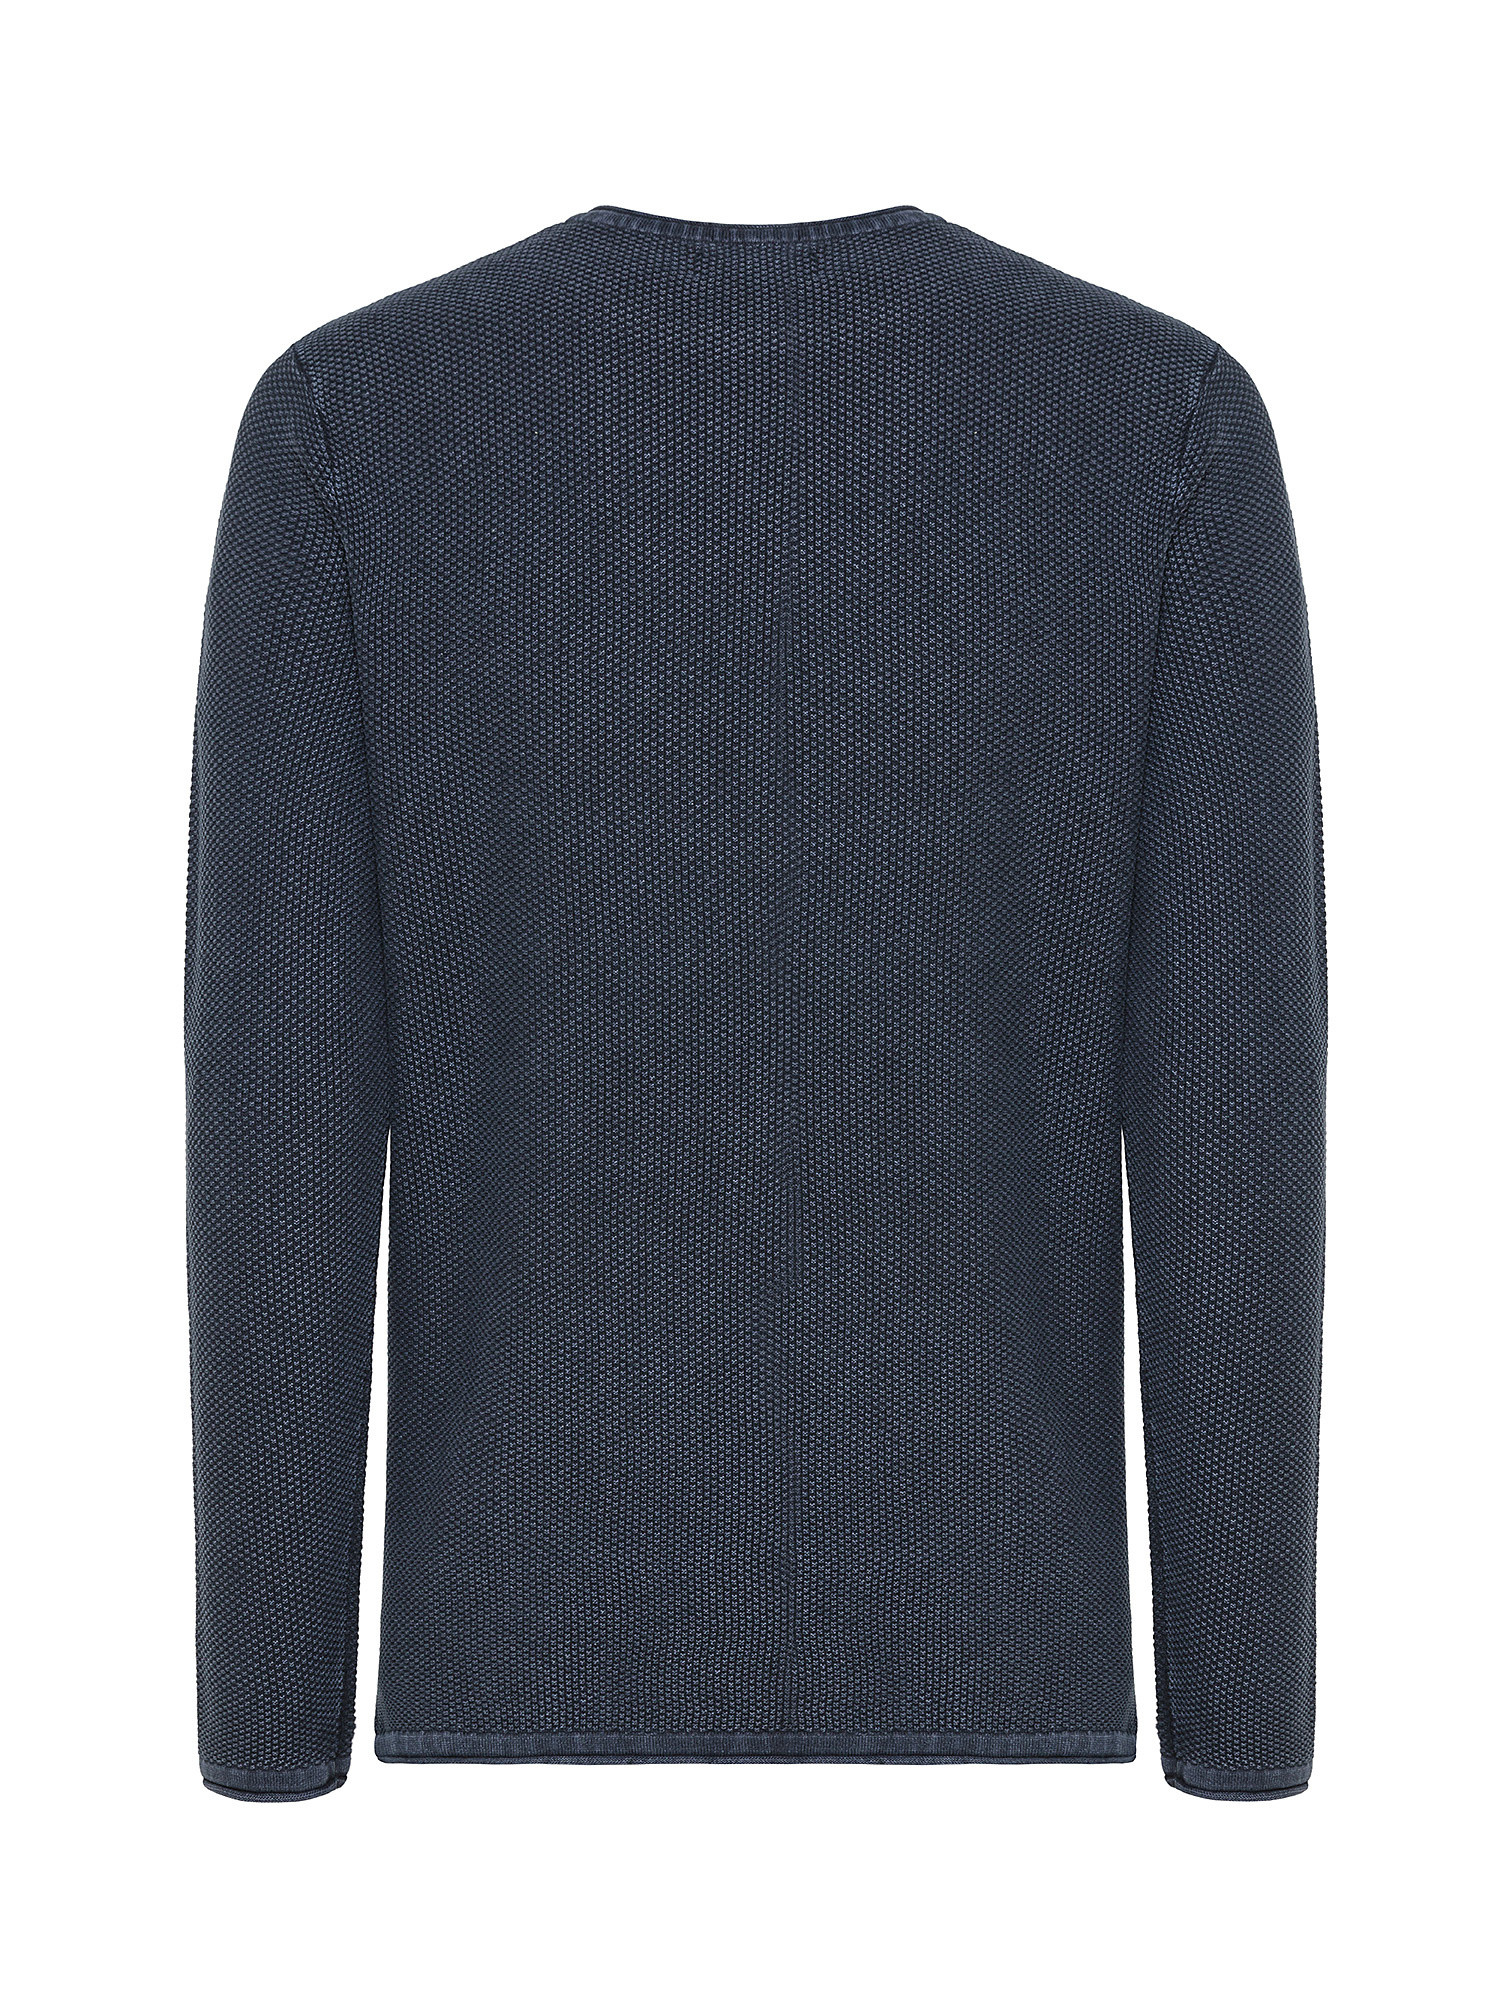 Jack & Jones - Cotton pullover, Dark Blue, large image number 1